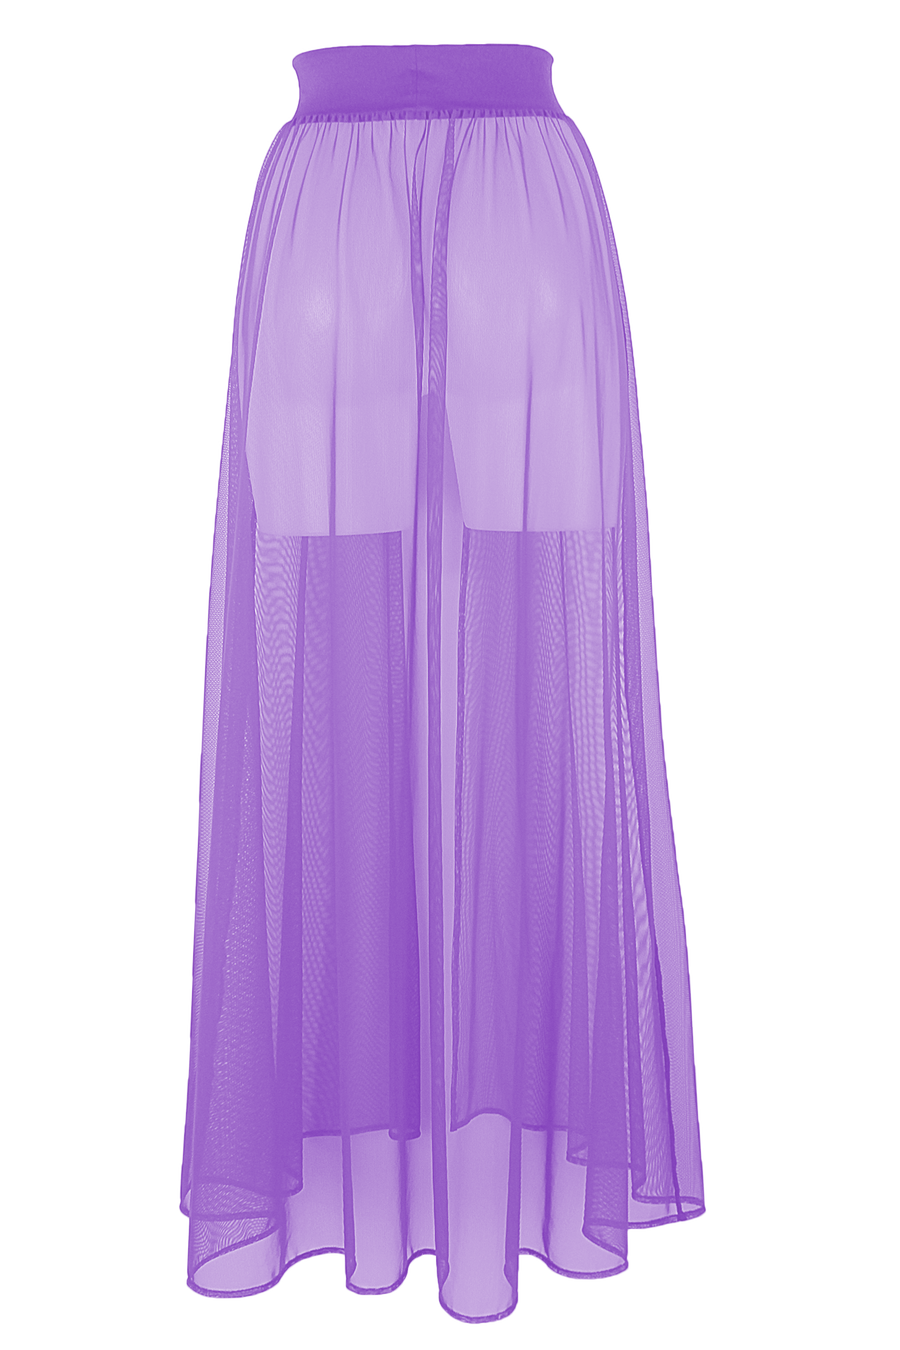 Mesh Maxi Skirt Cover-up Long / FESTIVAL SKIRT LILAC - EXES LINGERIE